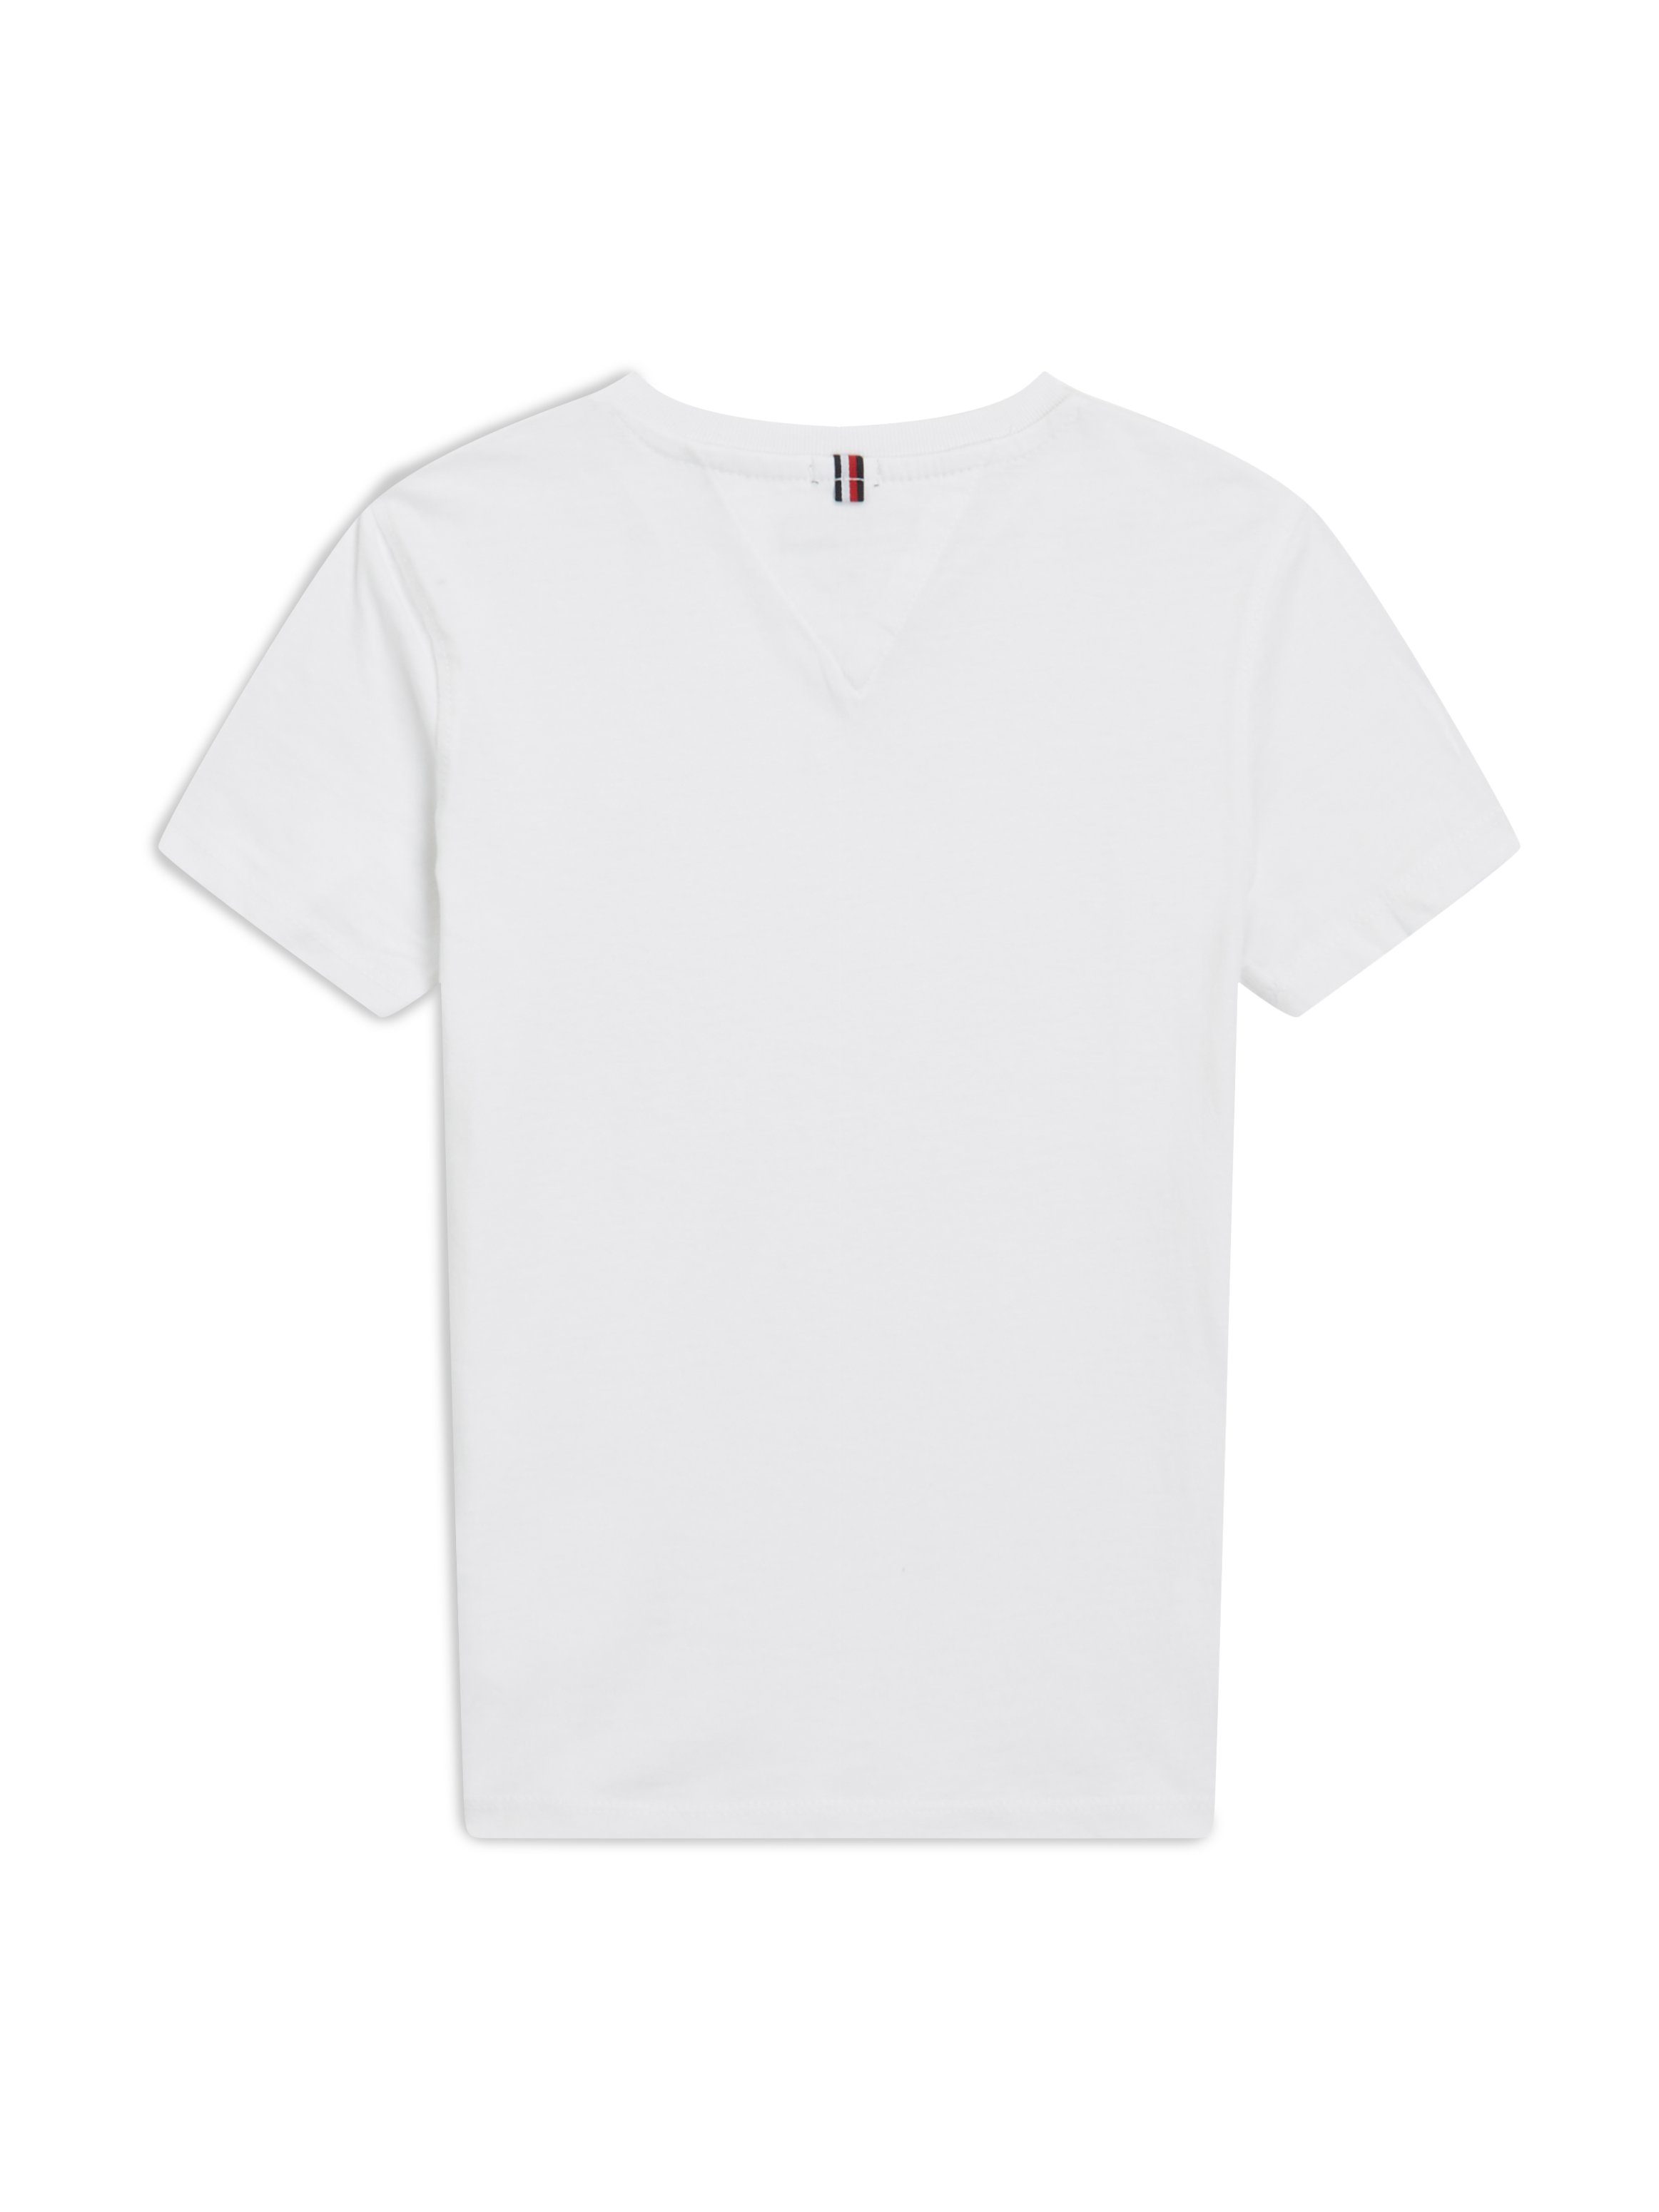 Bright_White V-Shirt Hilfiger BASIC Logo-Flag KNIT VN Tommy BOYS mit Tommy Hilfiger S/S